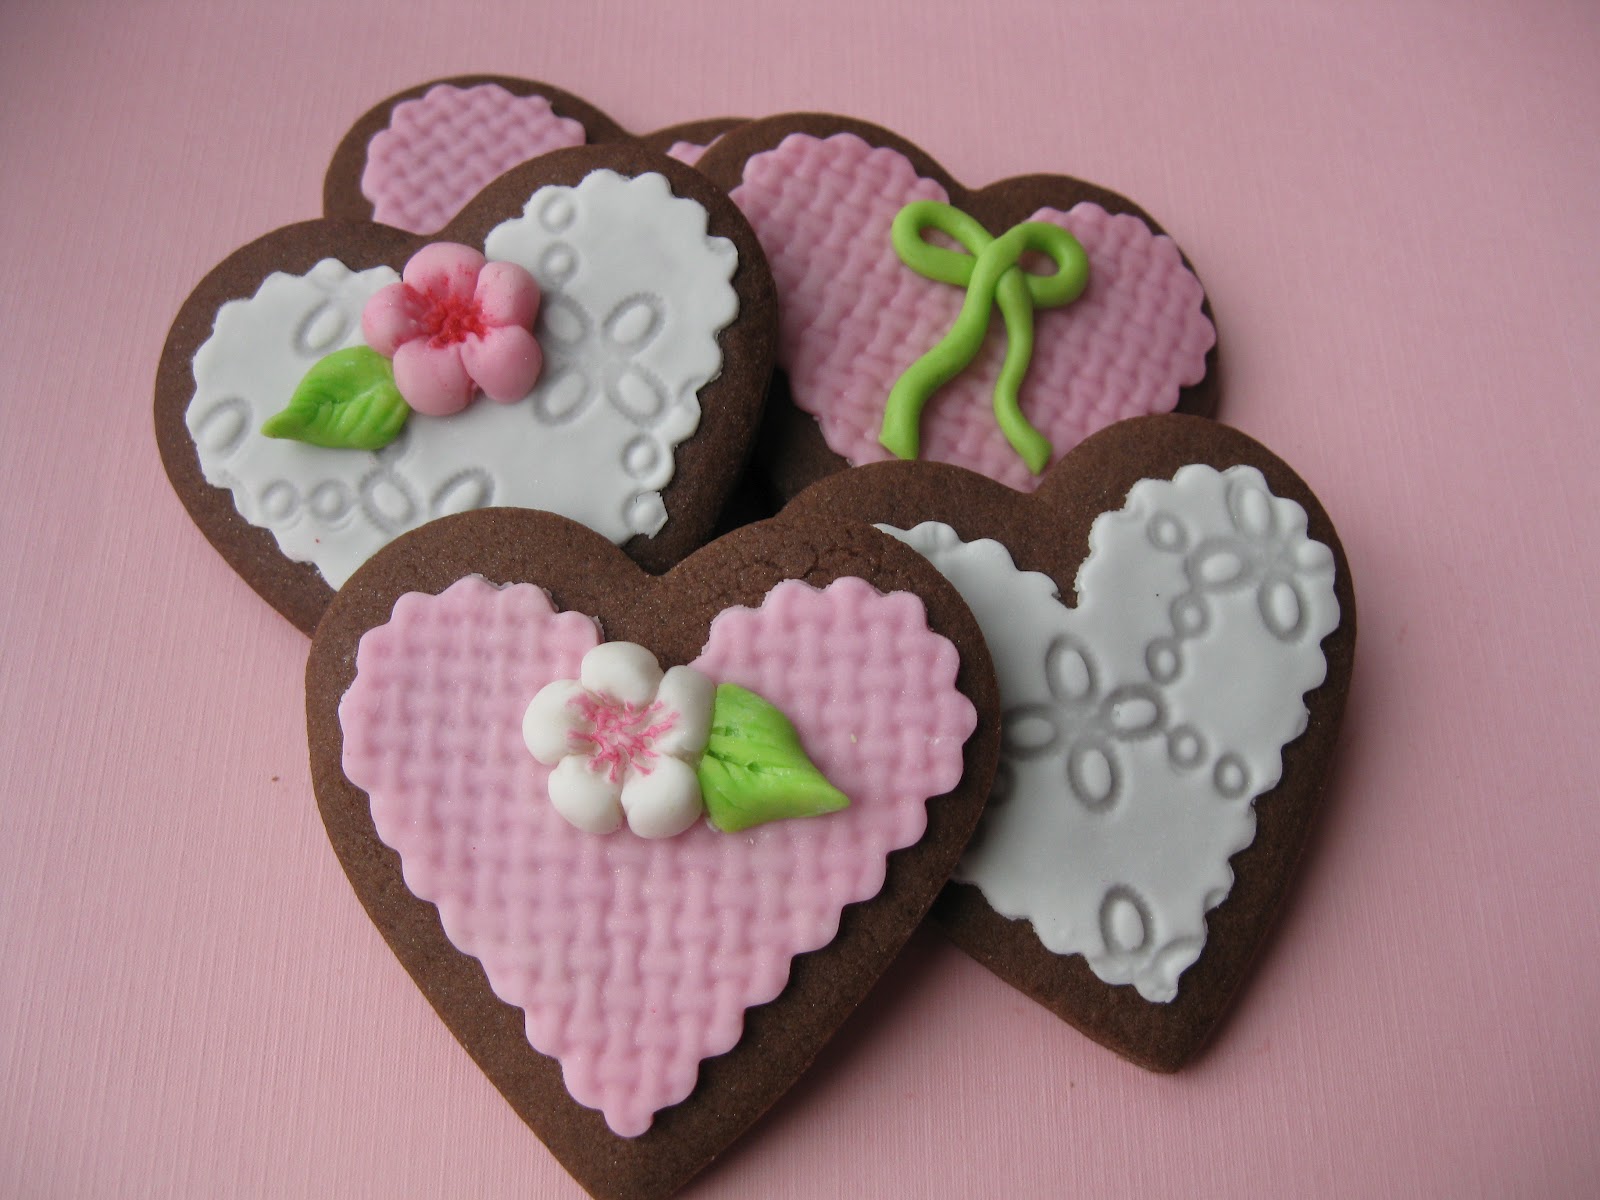 Печенье сердце. Шоколадное печенье в виде сердца. Печенье сердце Шоколадница. Rolling cookies